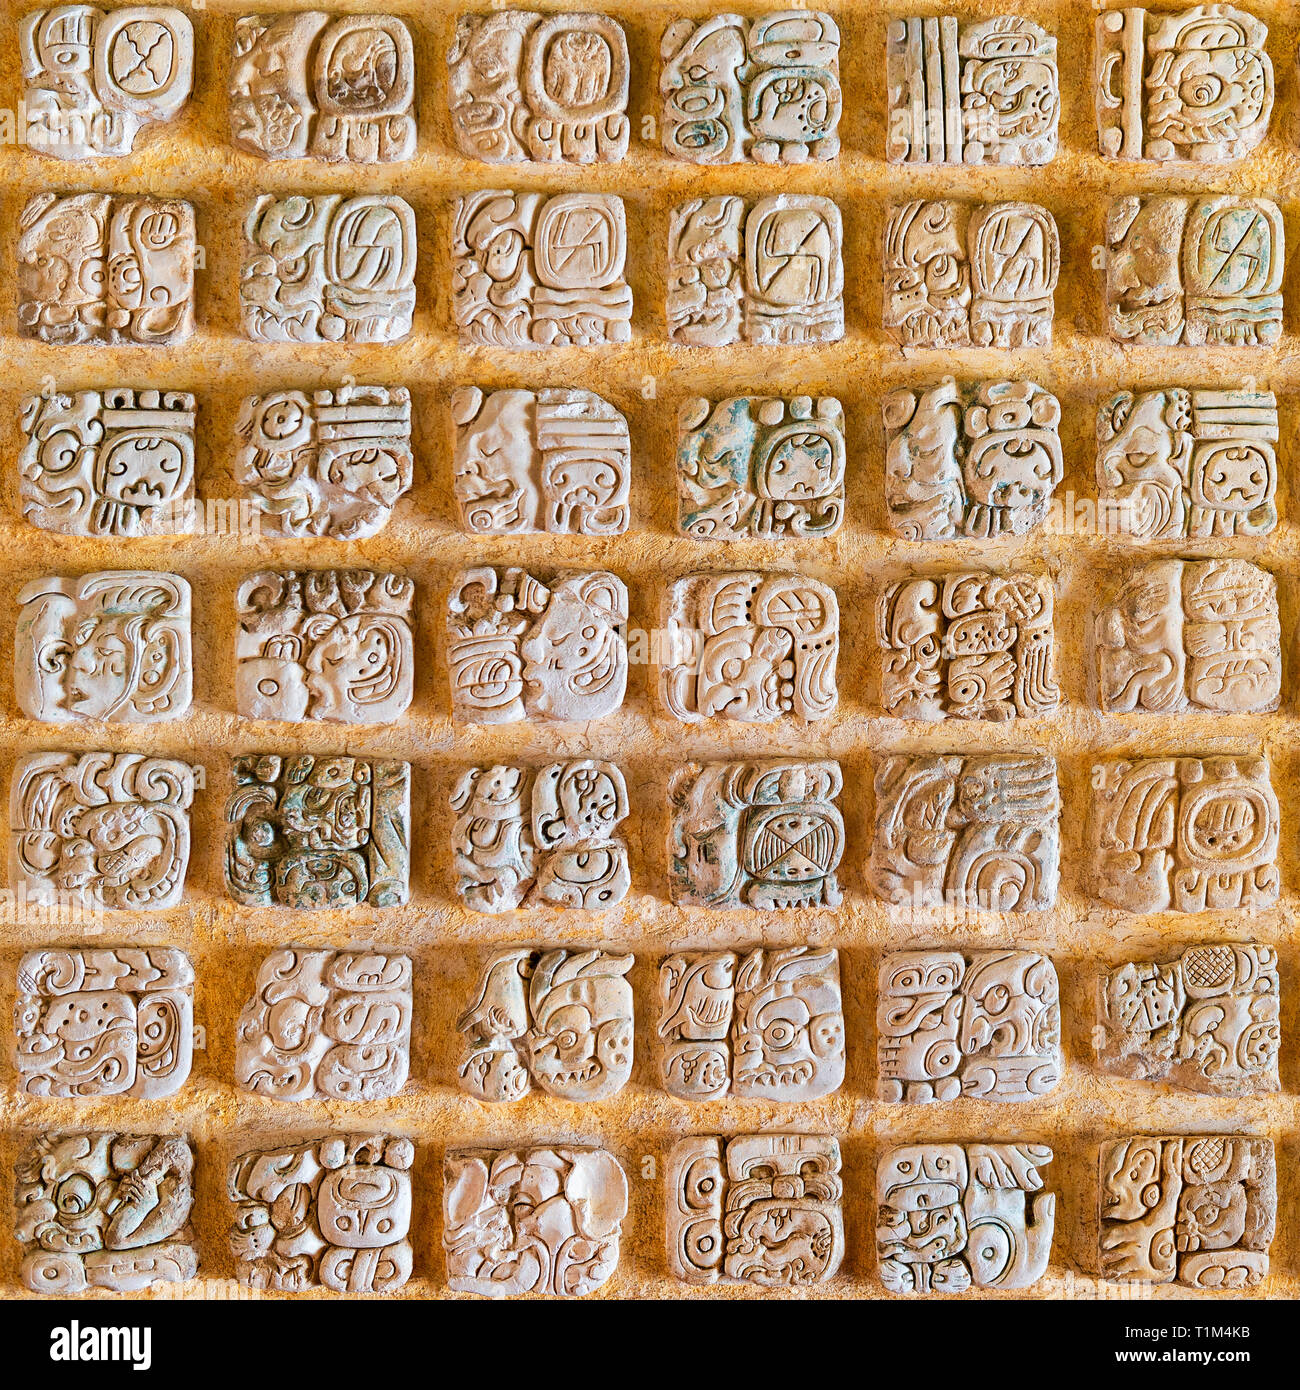 Fotografia quadrata dell'Alfabeto Maya con geroglifici di un sistema di scrittura dalle antiche civiltà maya. Trovato in Messico, Guatemala e Honduras. Foto Stock